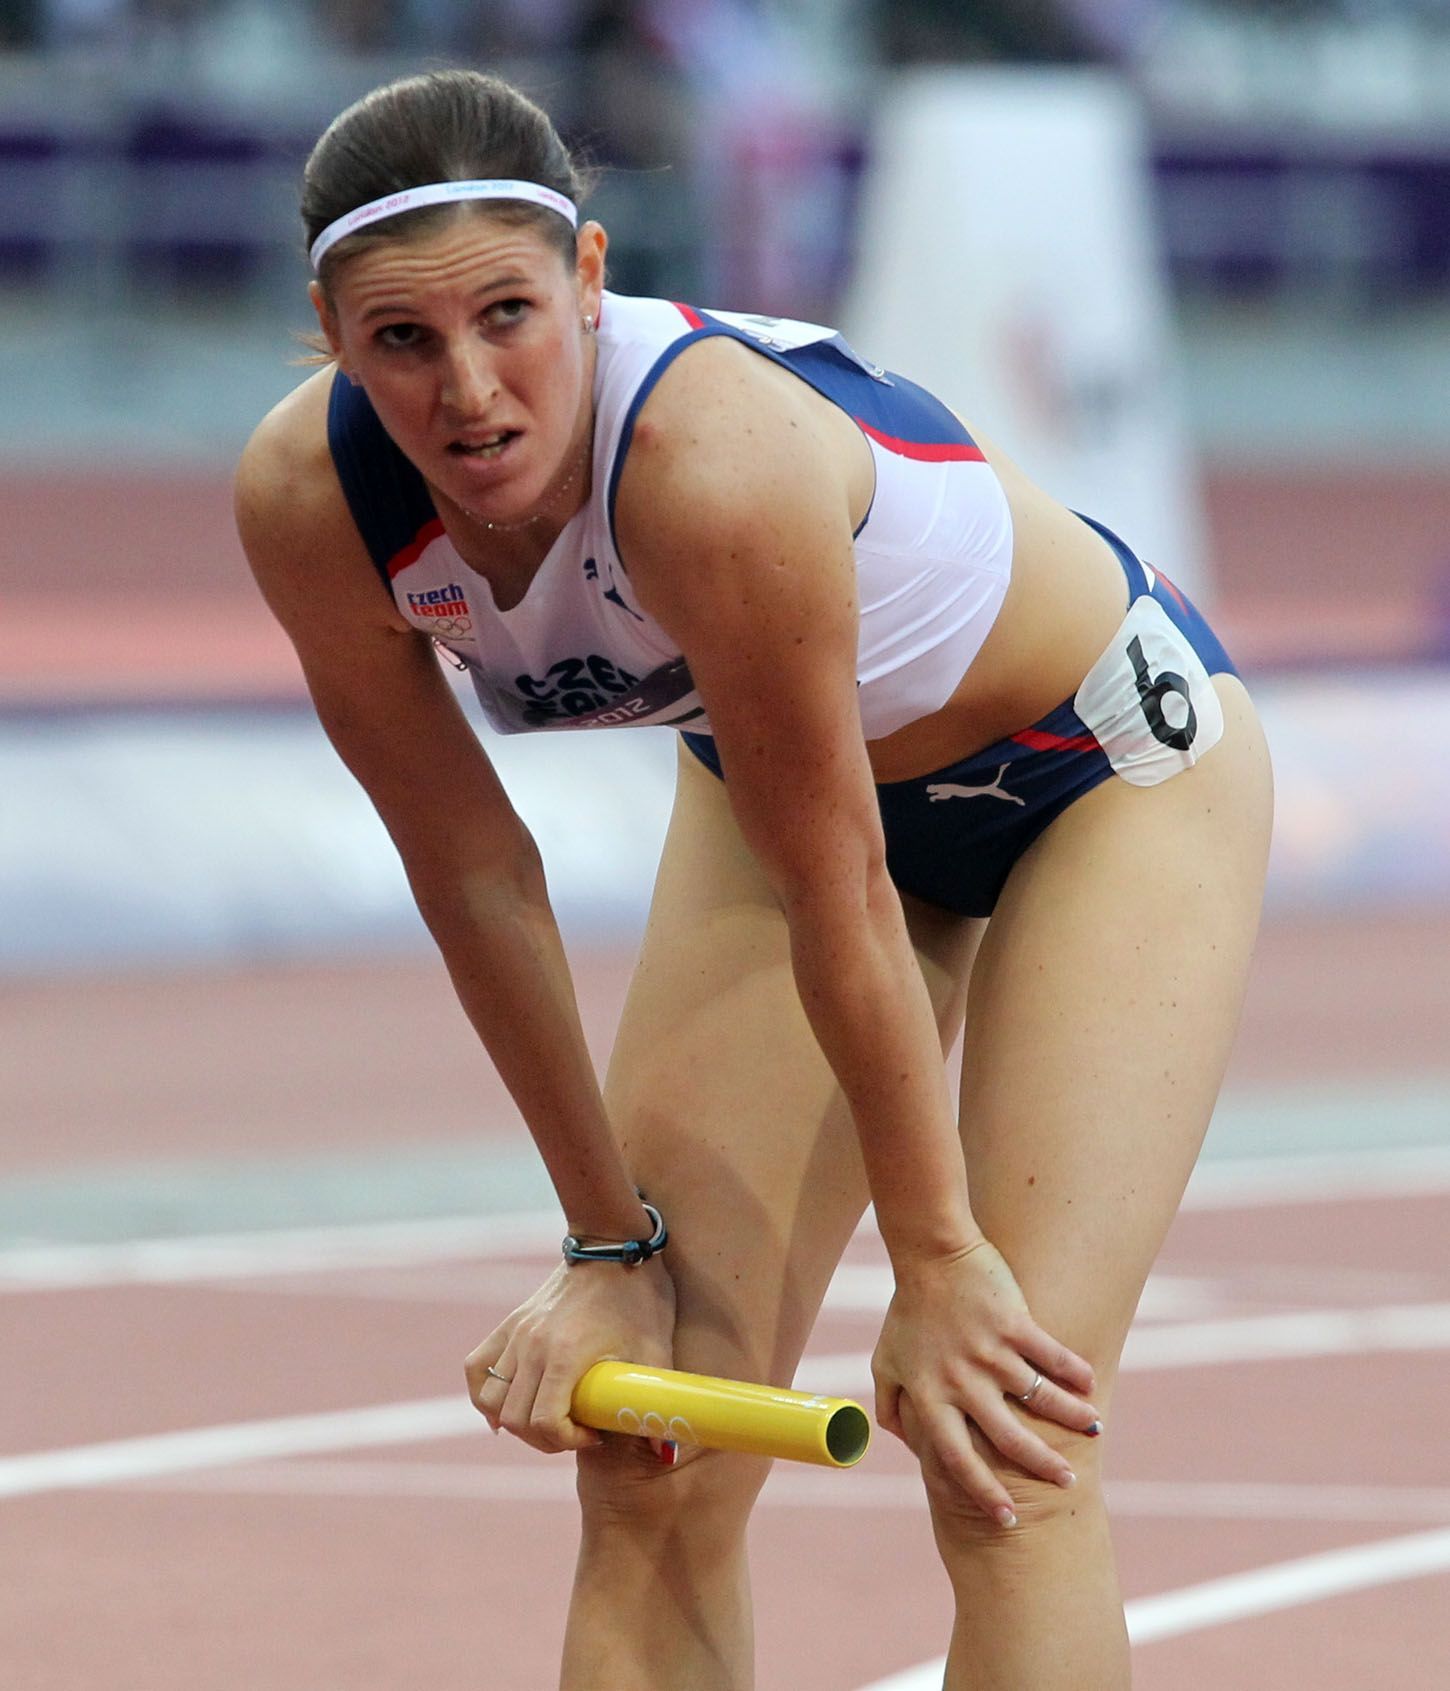 Česká sprinterka Zuzana Hejnová doběhla 4. v druhém rozběhu kvalifikace ve štafetě na 4x400 m na OH 2012 v Londýně.